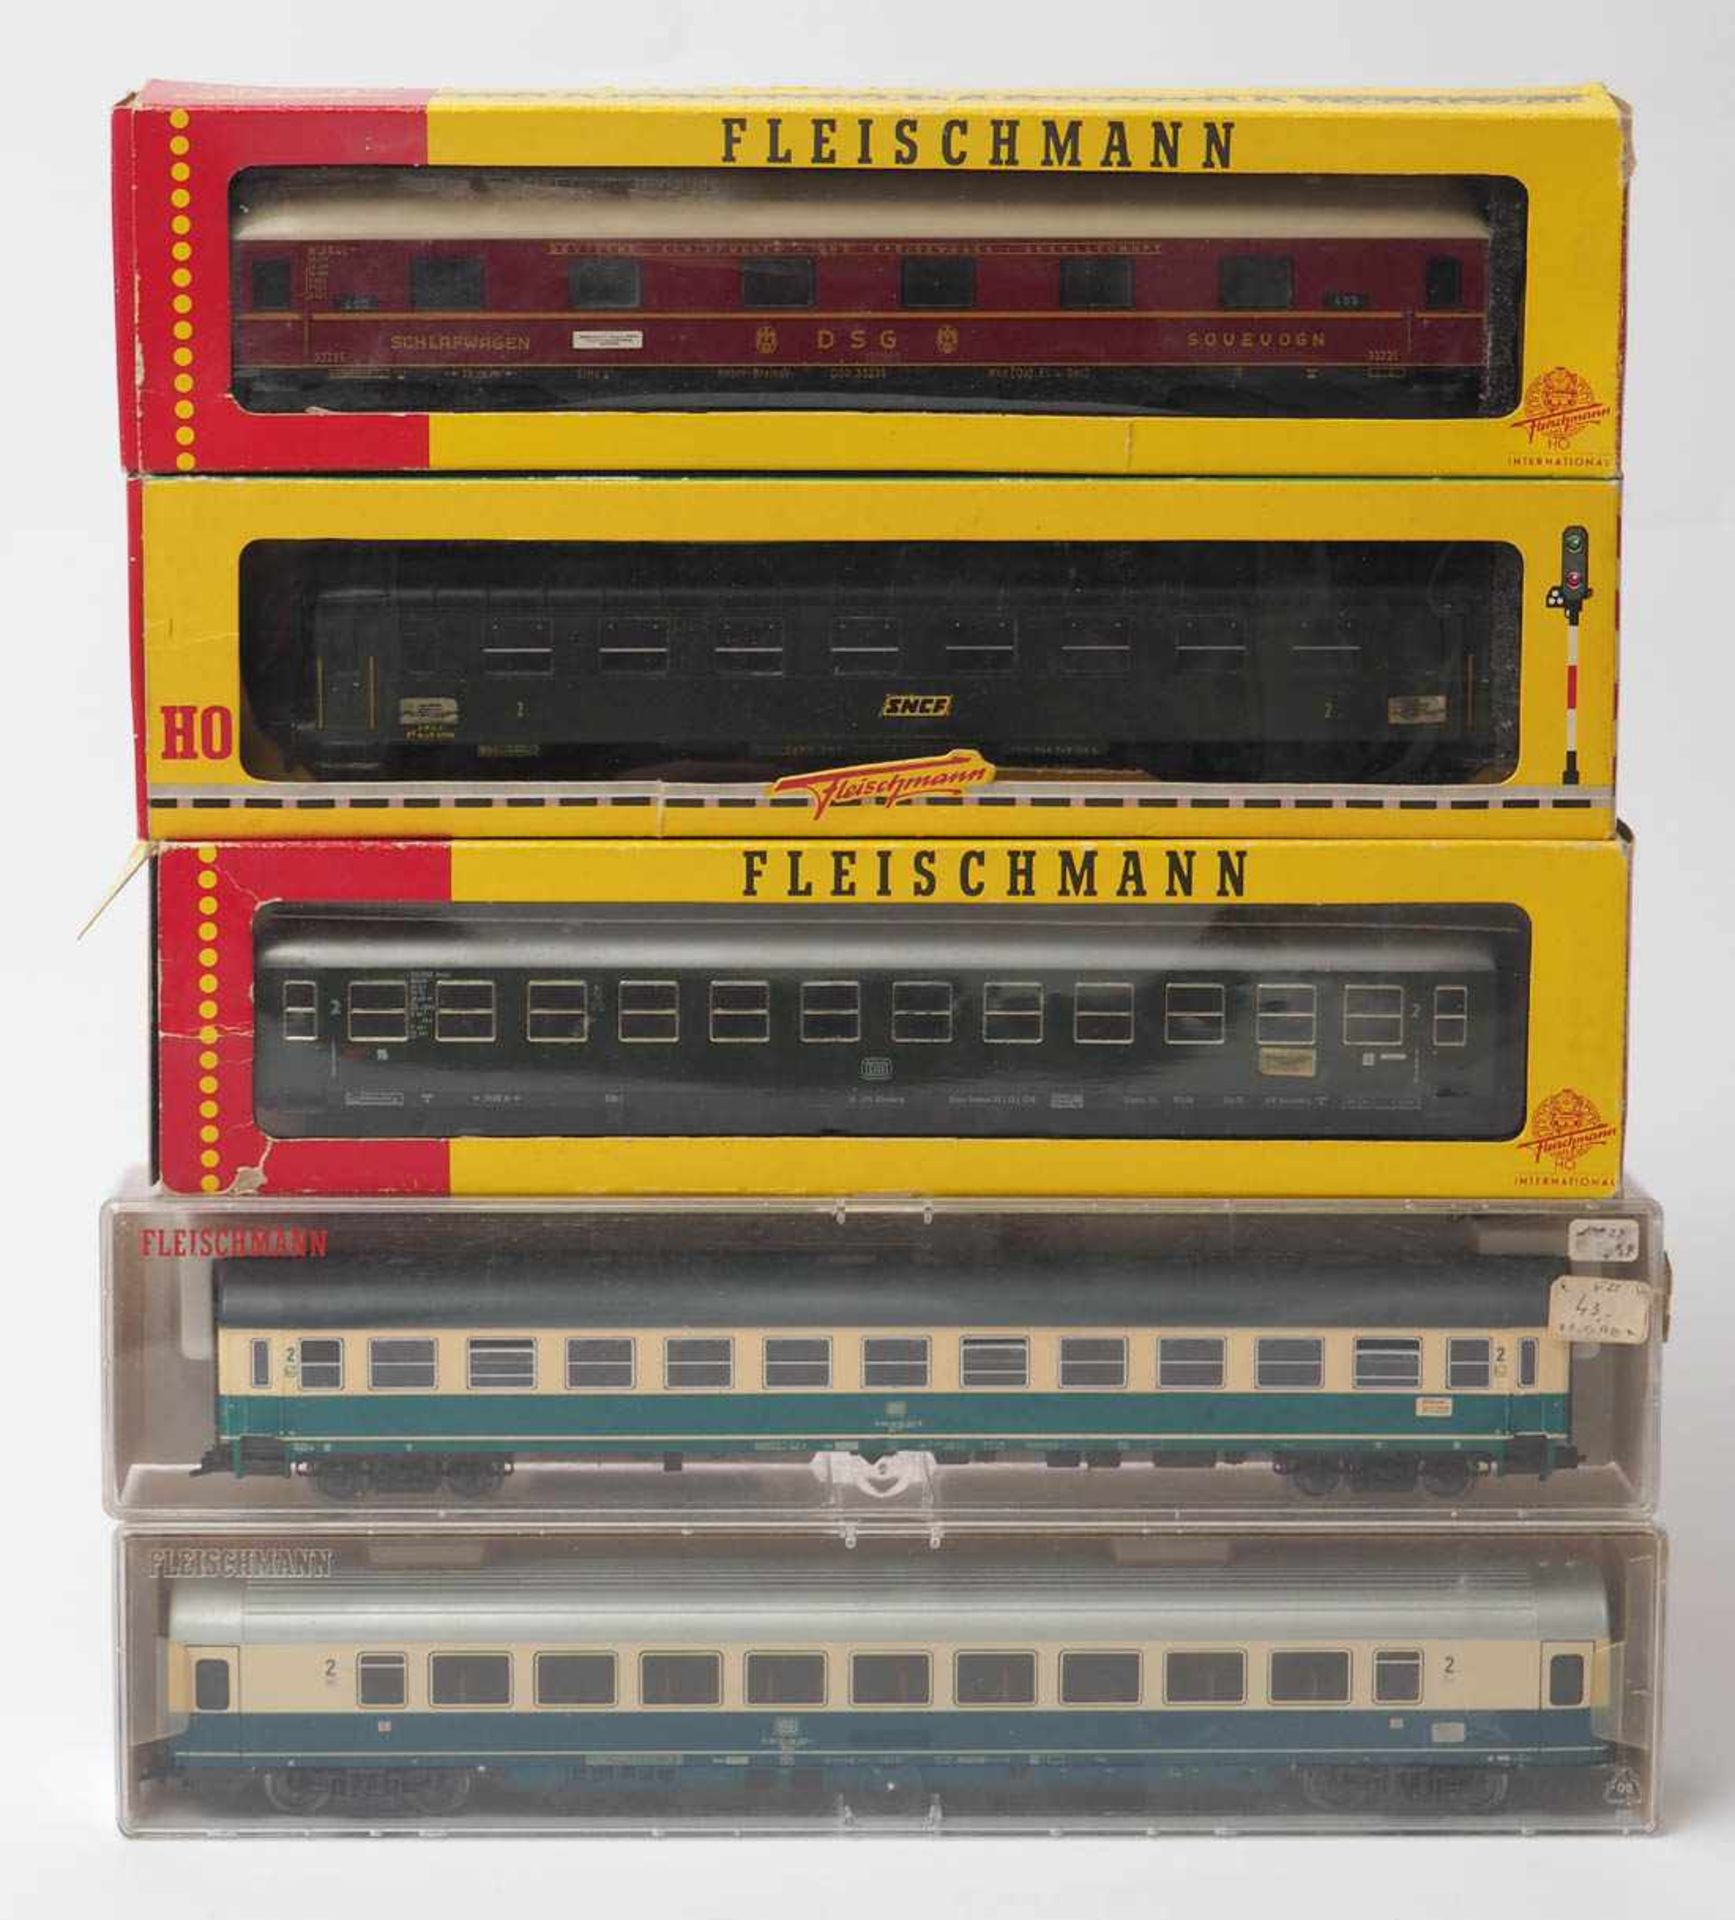 Fünf Schnellzugwagen, Fleischmann, Spur H0 Modellnummern 5614 und 5192. Im originalen Karton. Dazu